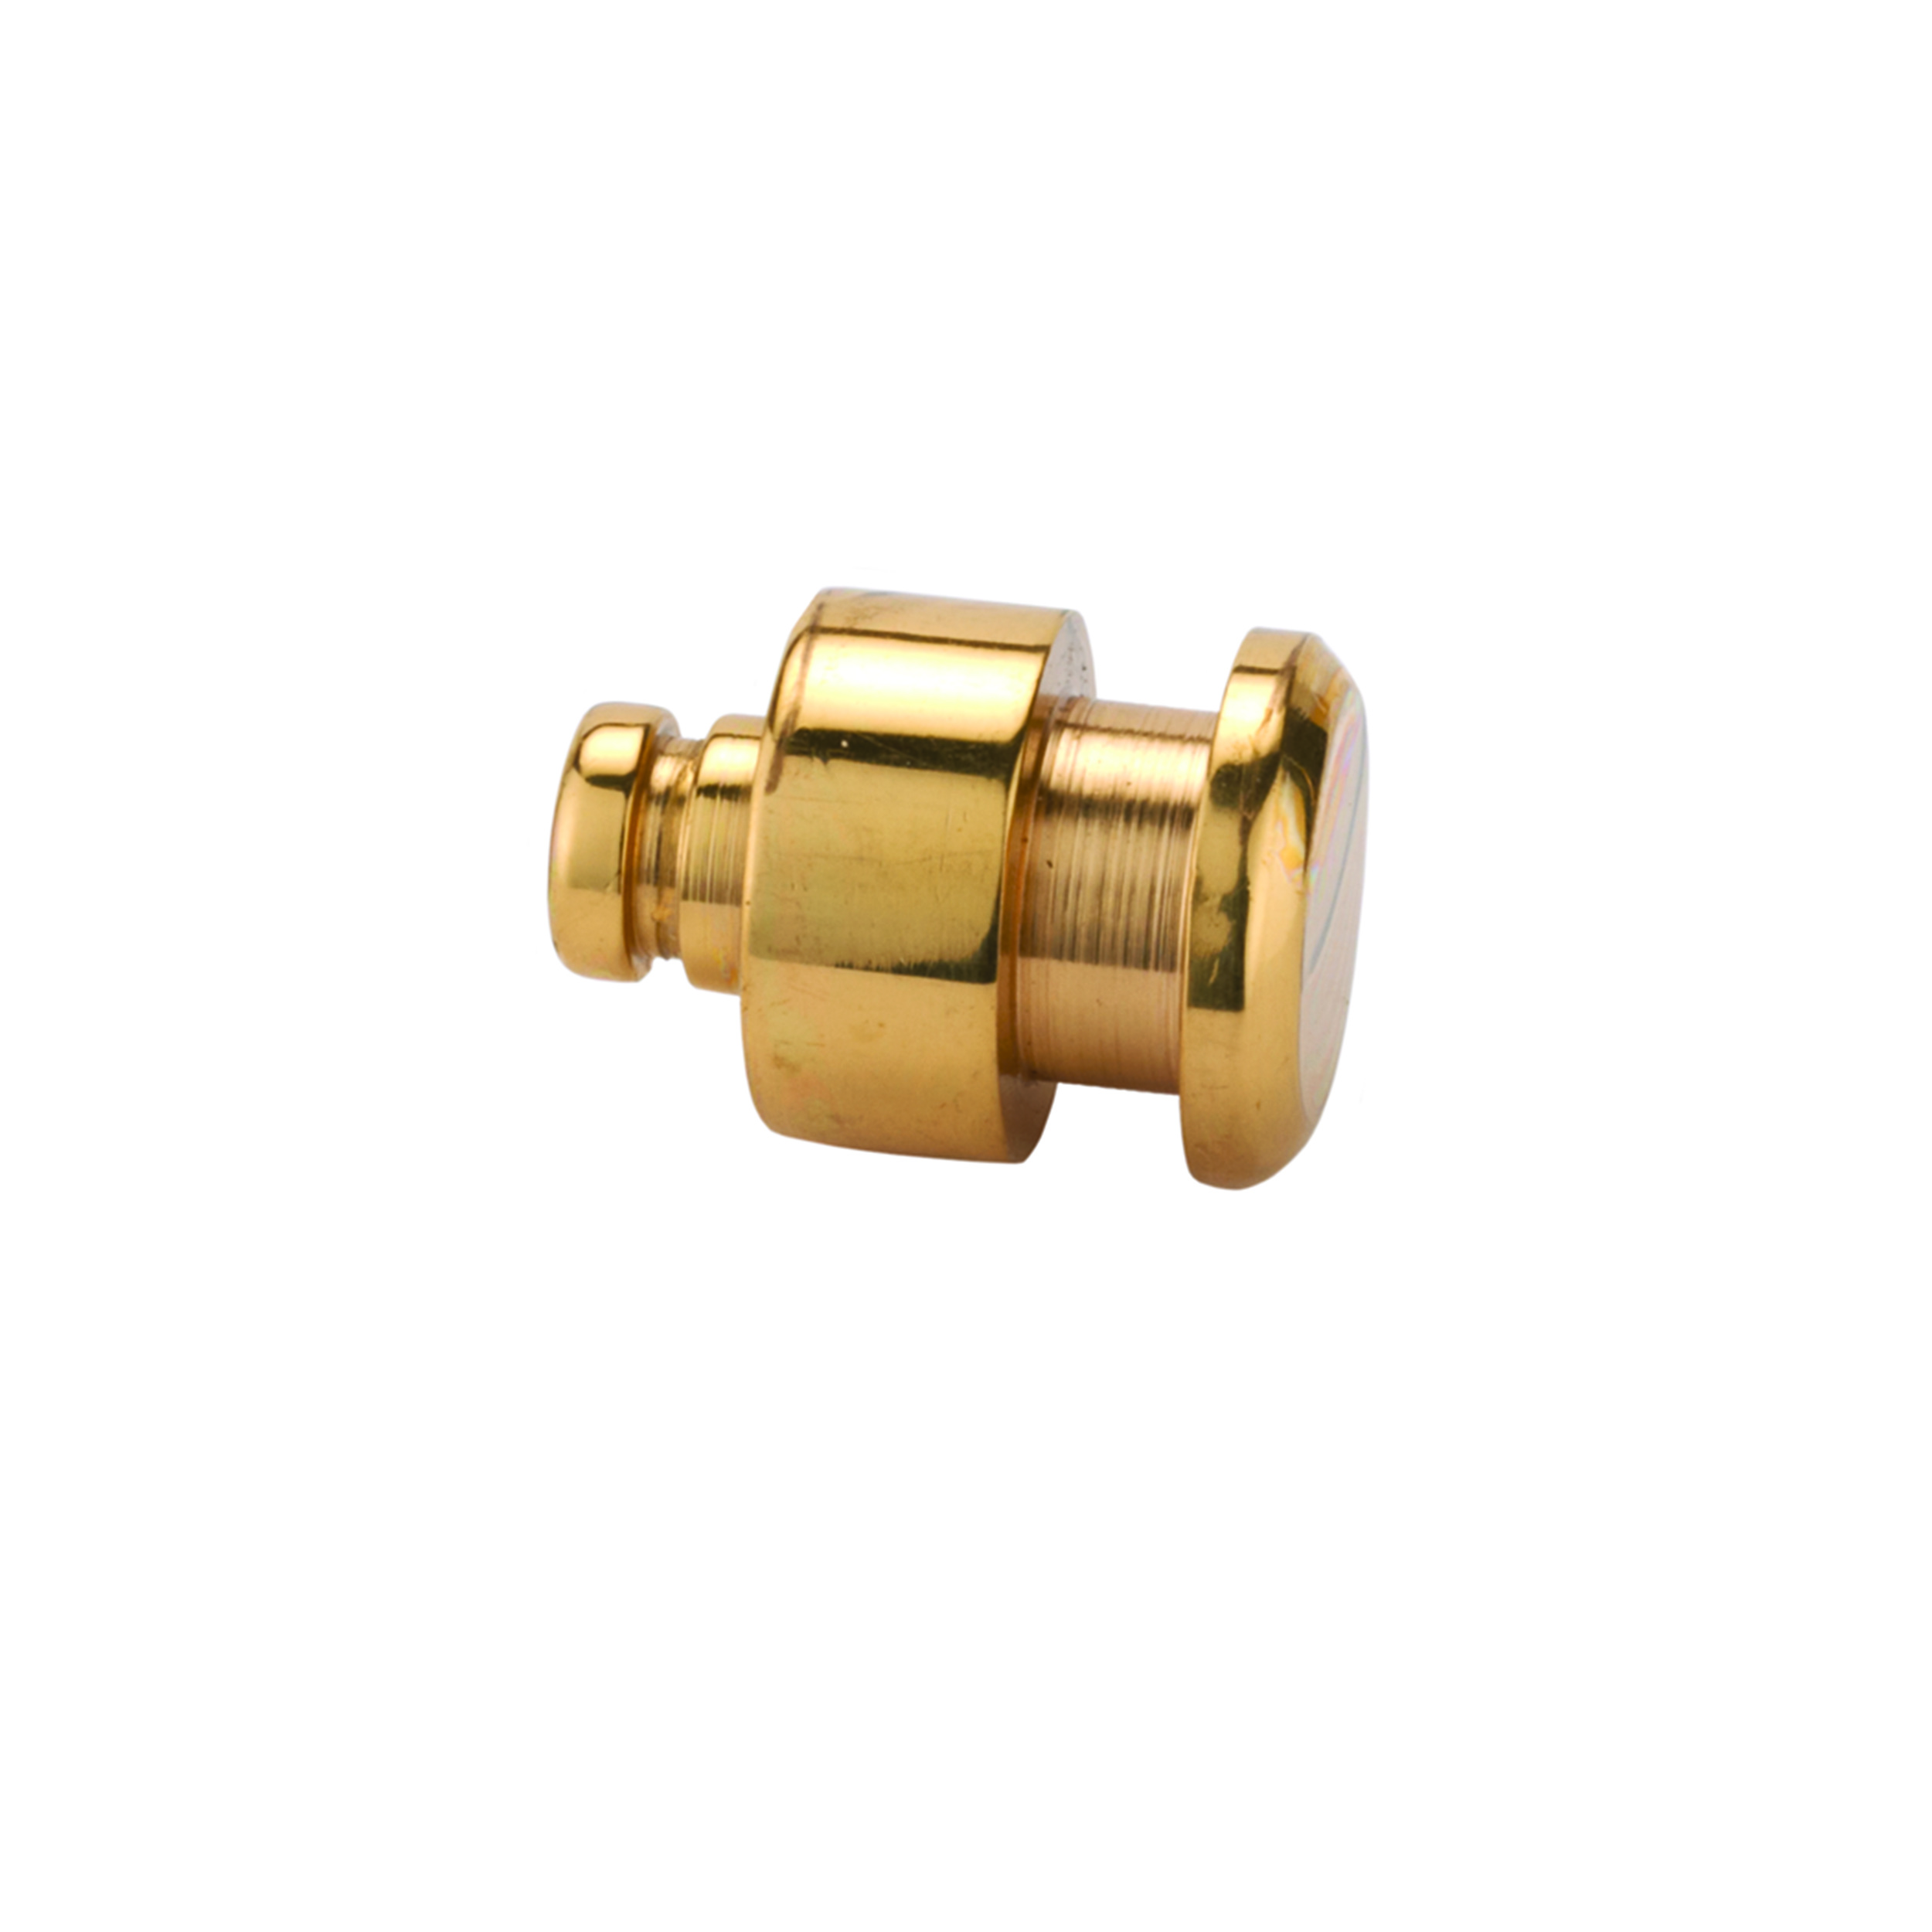 Jewelry Box Feet/knob Polished Brass 1/2" Diameter 1-piece